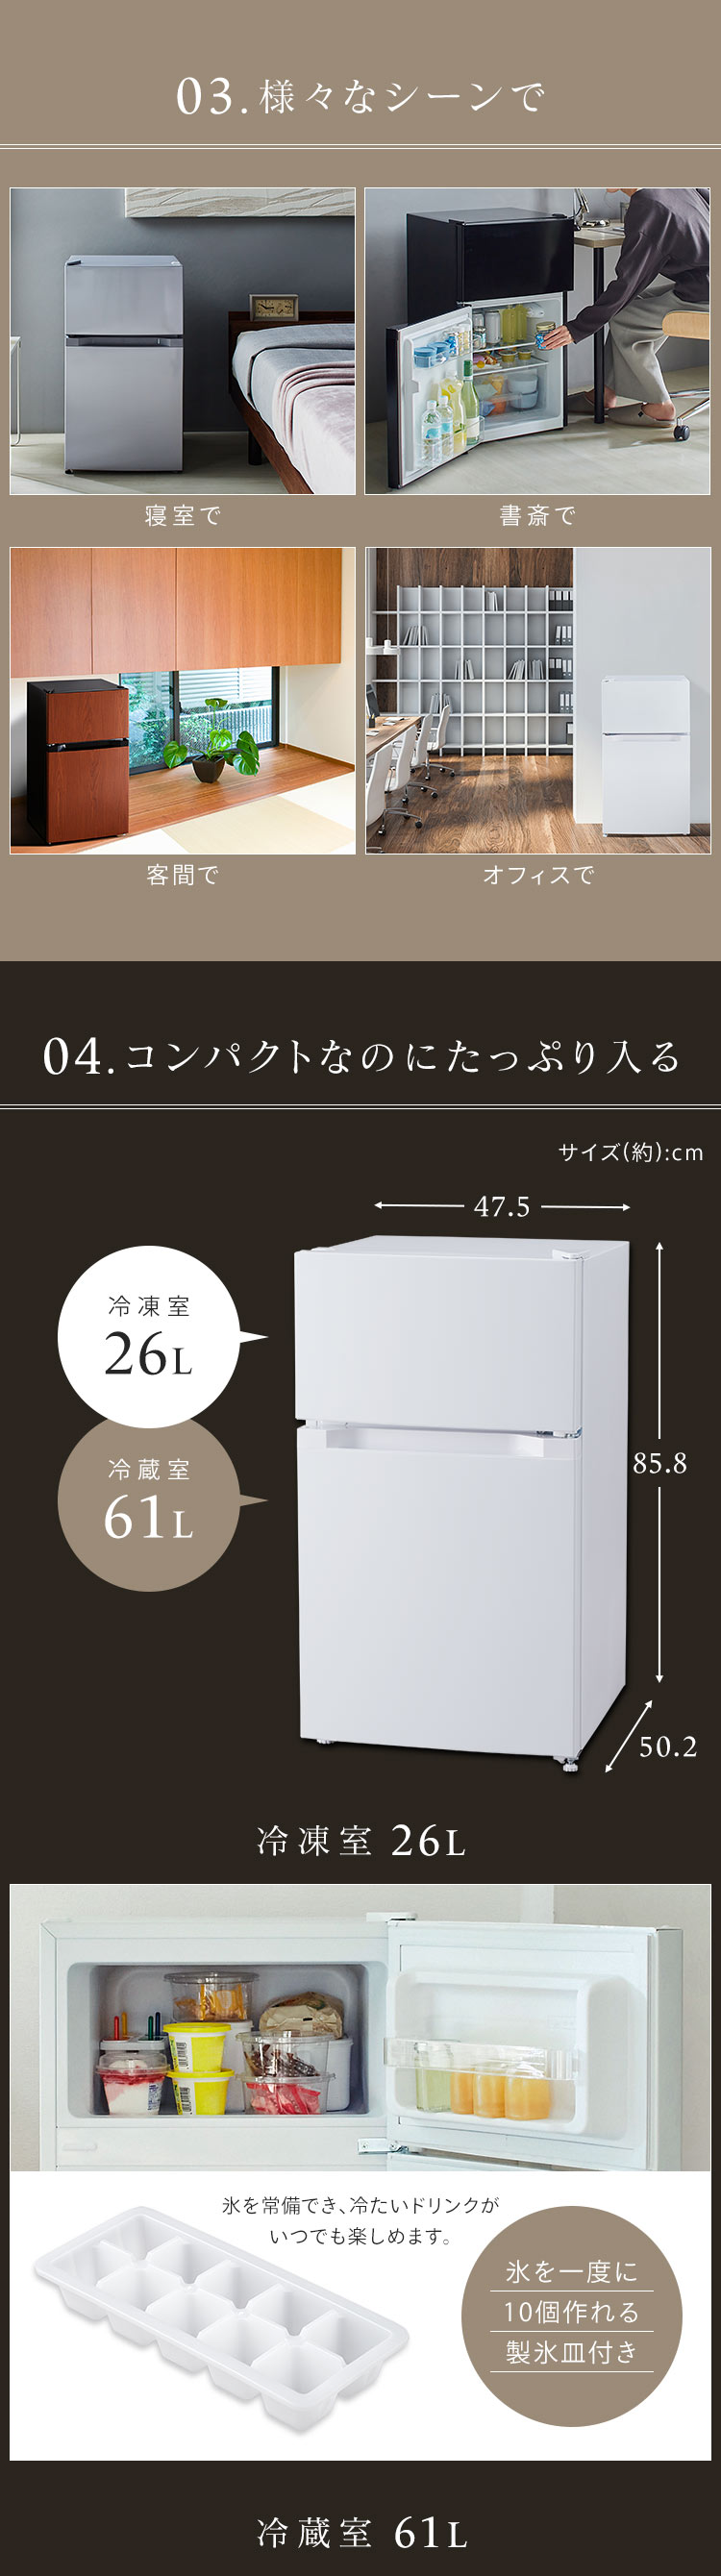 冷蔵庫 一人暮らし 2ドア 冷凍冷蔵庫 ノンフロン冷凍冷蔵庫 87L 新生活